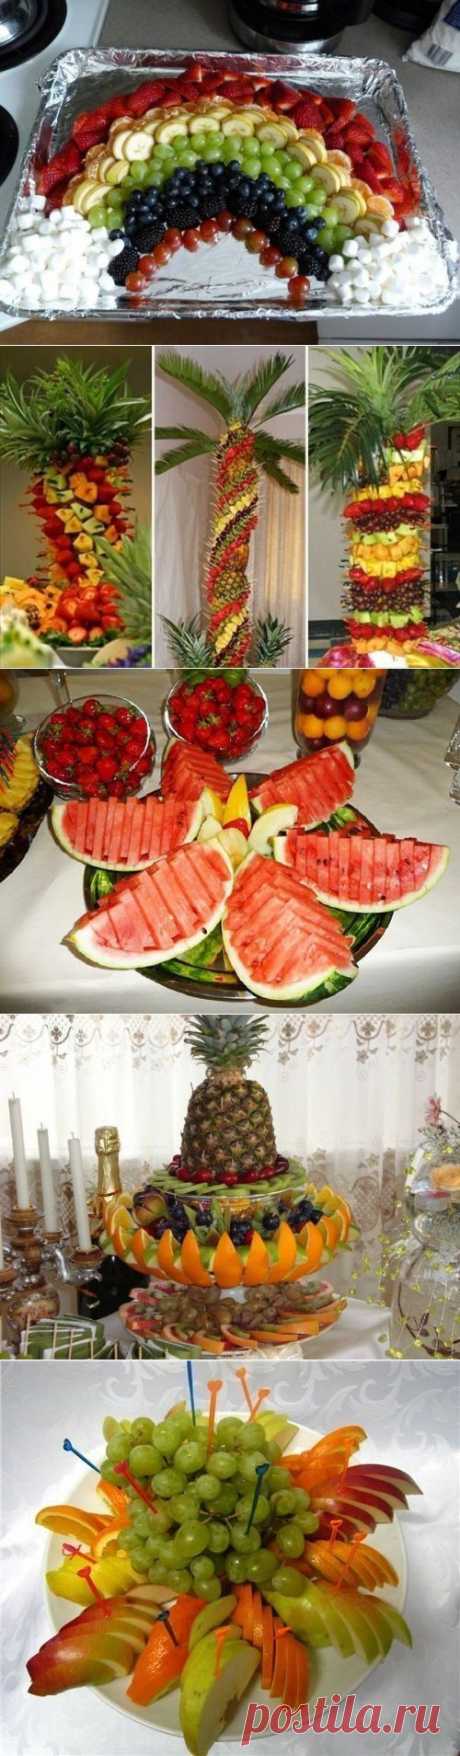 Как красиво оформить фруктовую тарелку | Готовим вместе